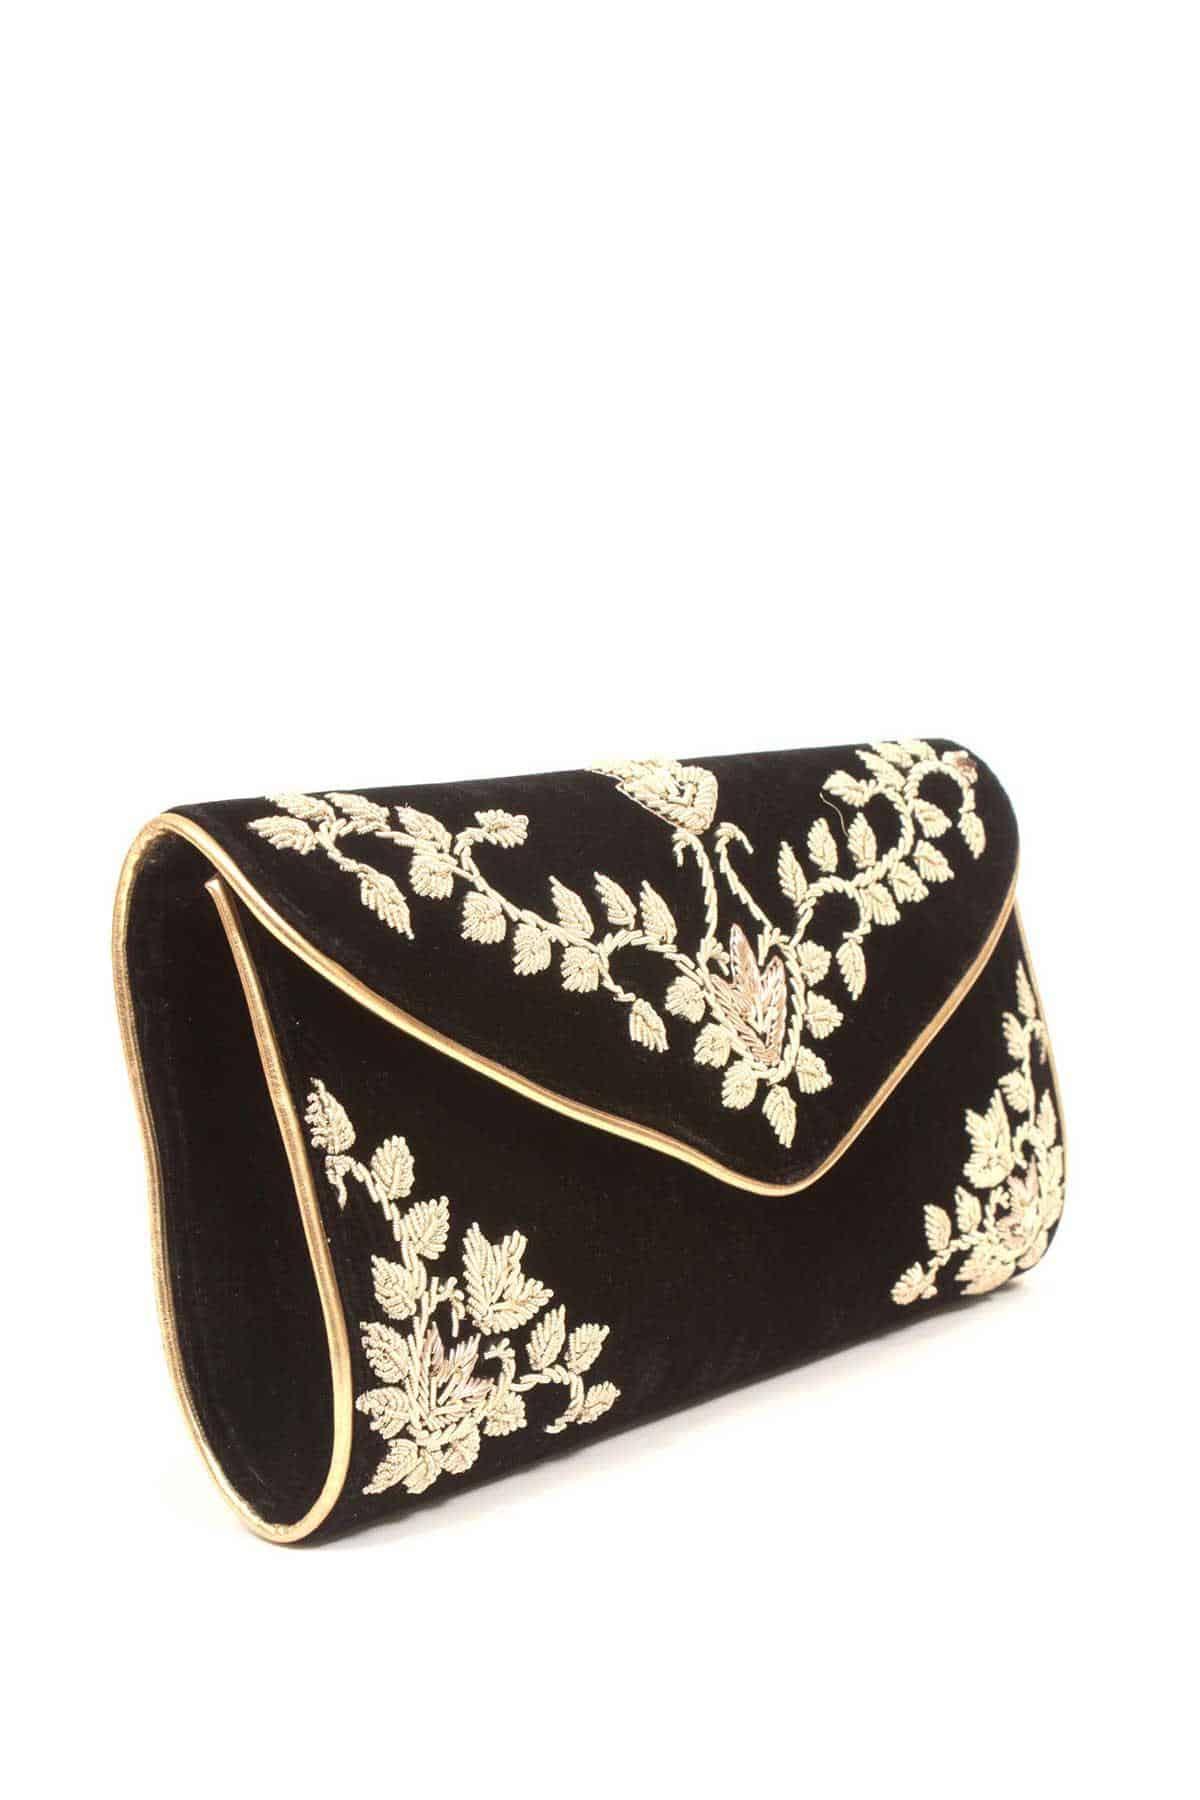 Black Wristlet Bag Envelope Small Purse Clutch – Envee Styles Boutique